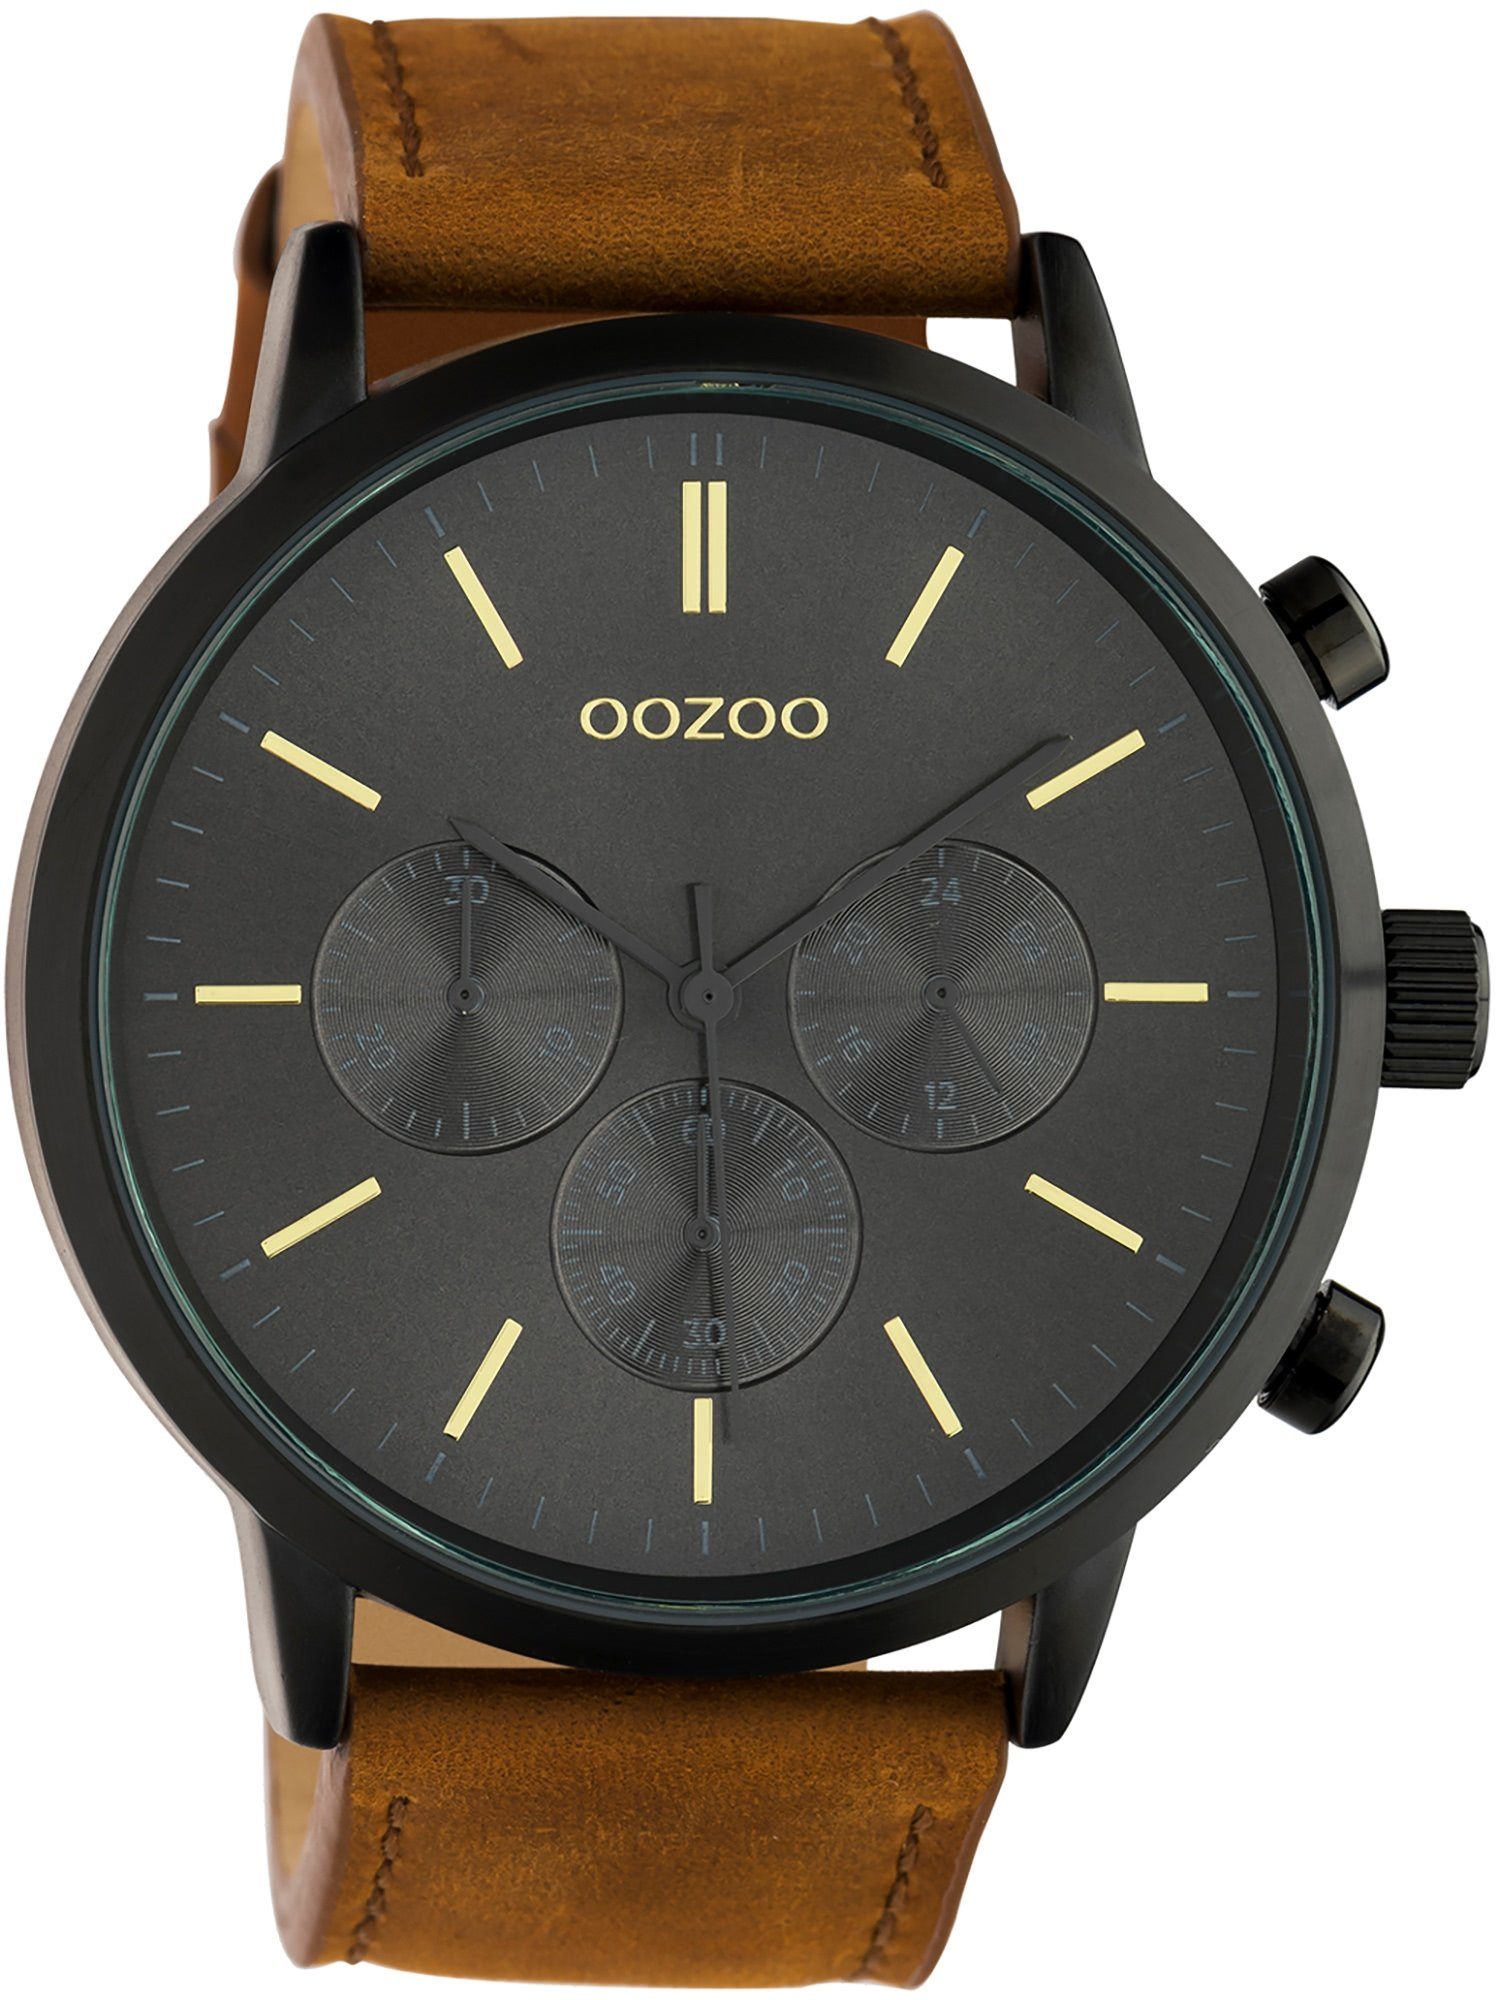 OOZOO Quarzuhr rund, Zeiger braun 48mm) Fashion-Style, Oozoo (ca. Herren Armbanduhr extra und groß graue Lederarmband, Herrenuhr Analog, Indizes goldene